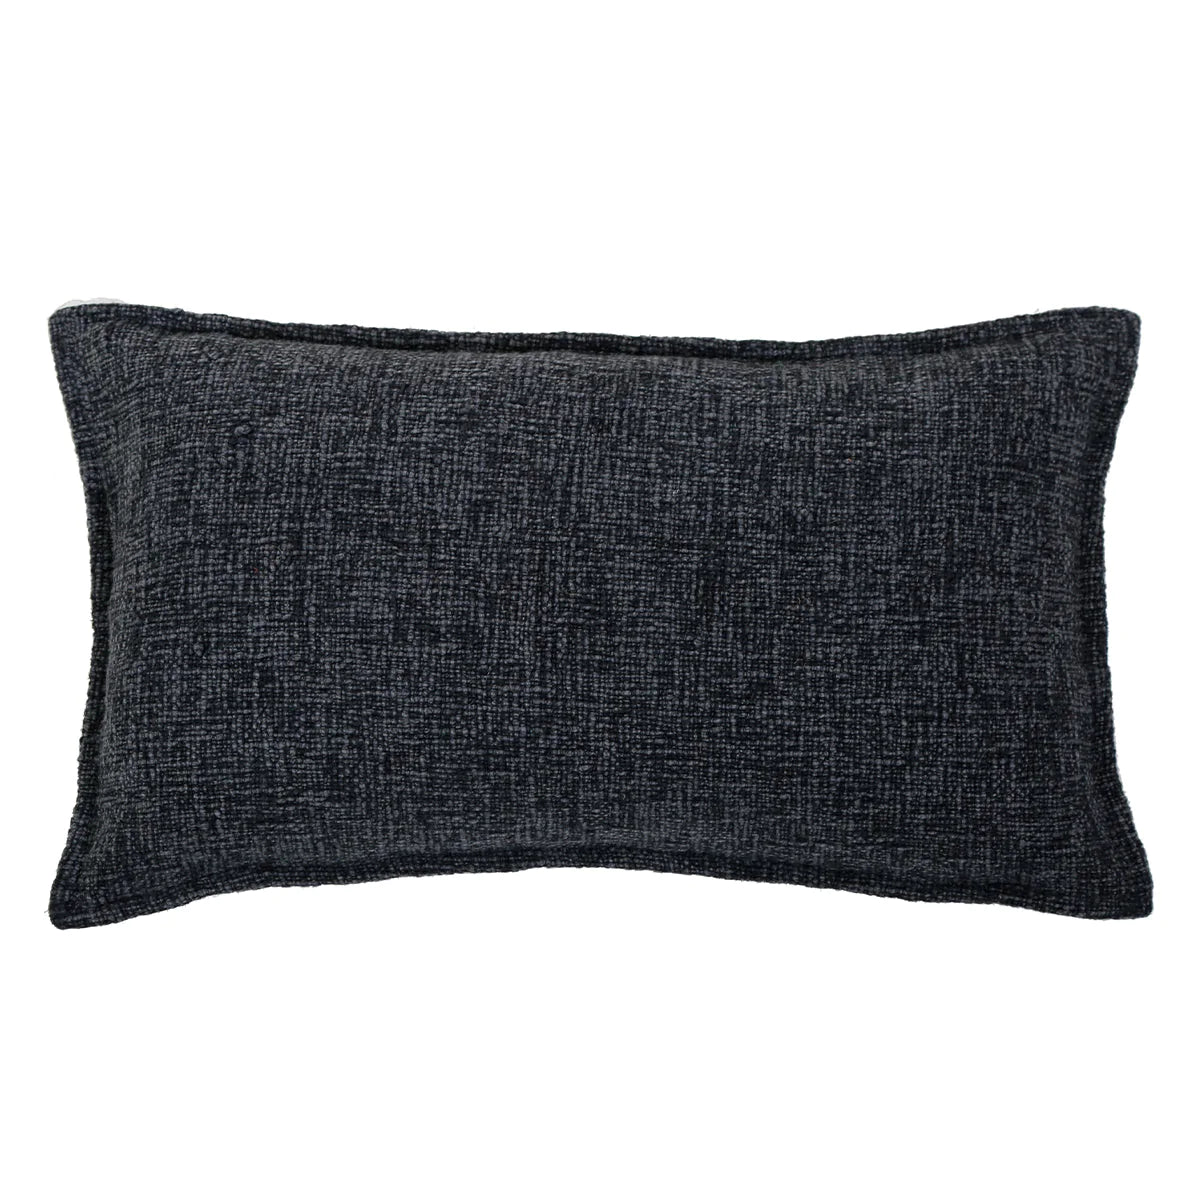 Humboldt Handwoven Rectangular Pillow, Charcoal